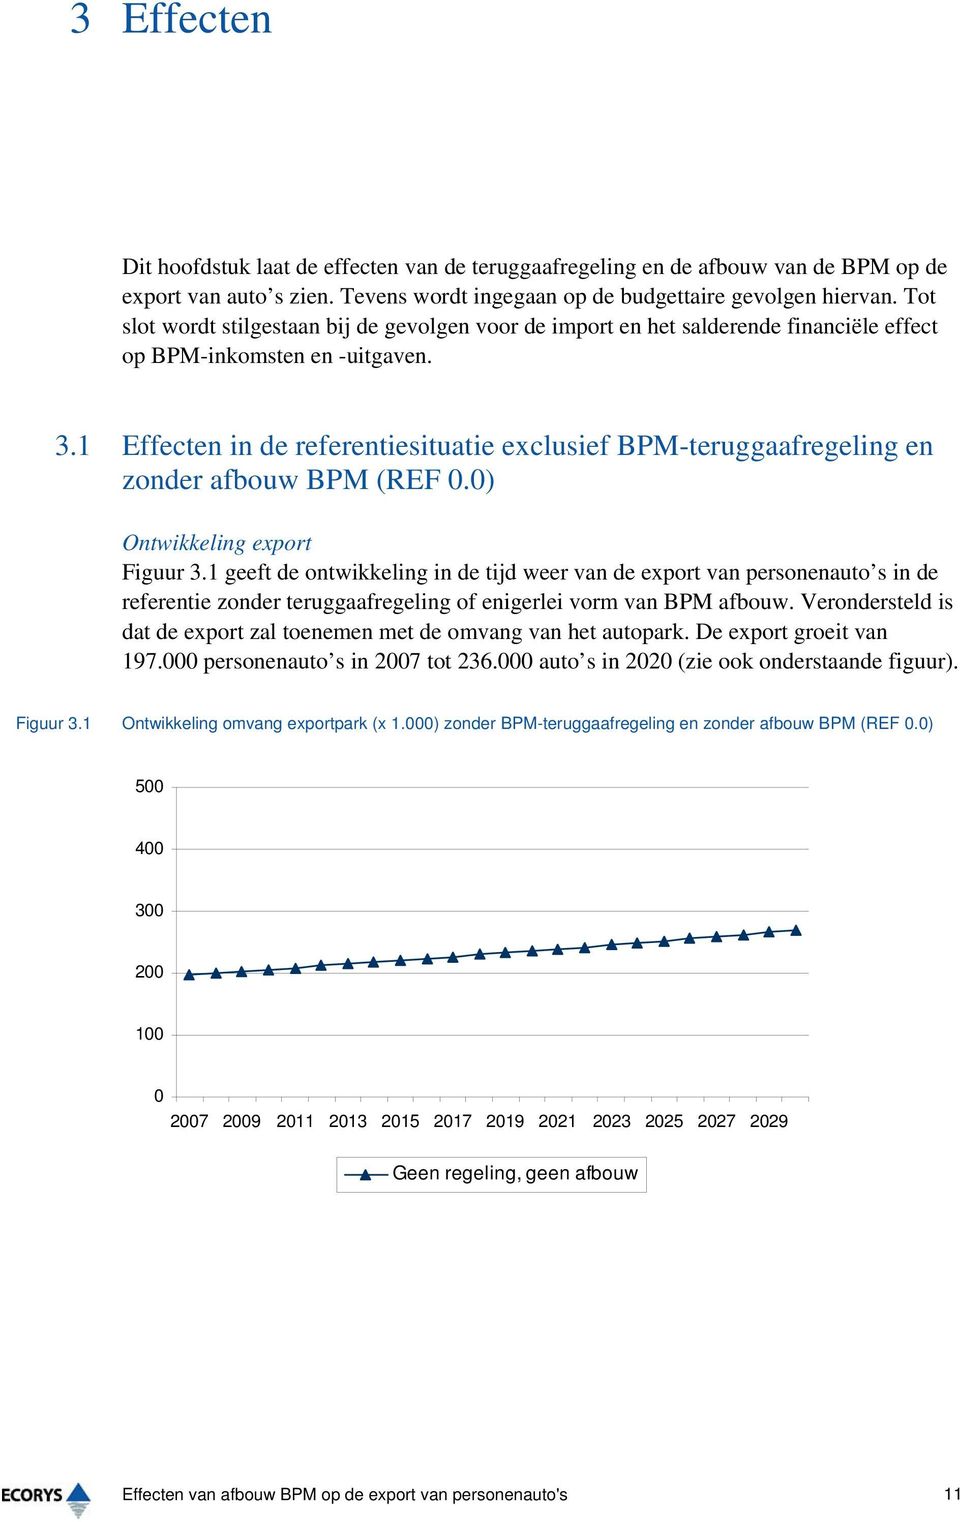 1 Effecten in de referentiesituatie exclusief BPM-teruggaafregeling en zonder afbouw BPM (REF.) Ontwikkeling export Figuur 3.